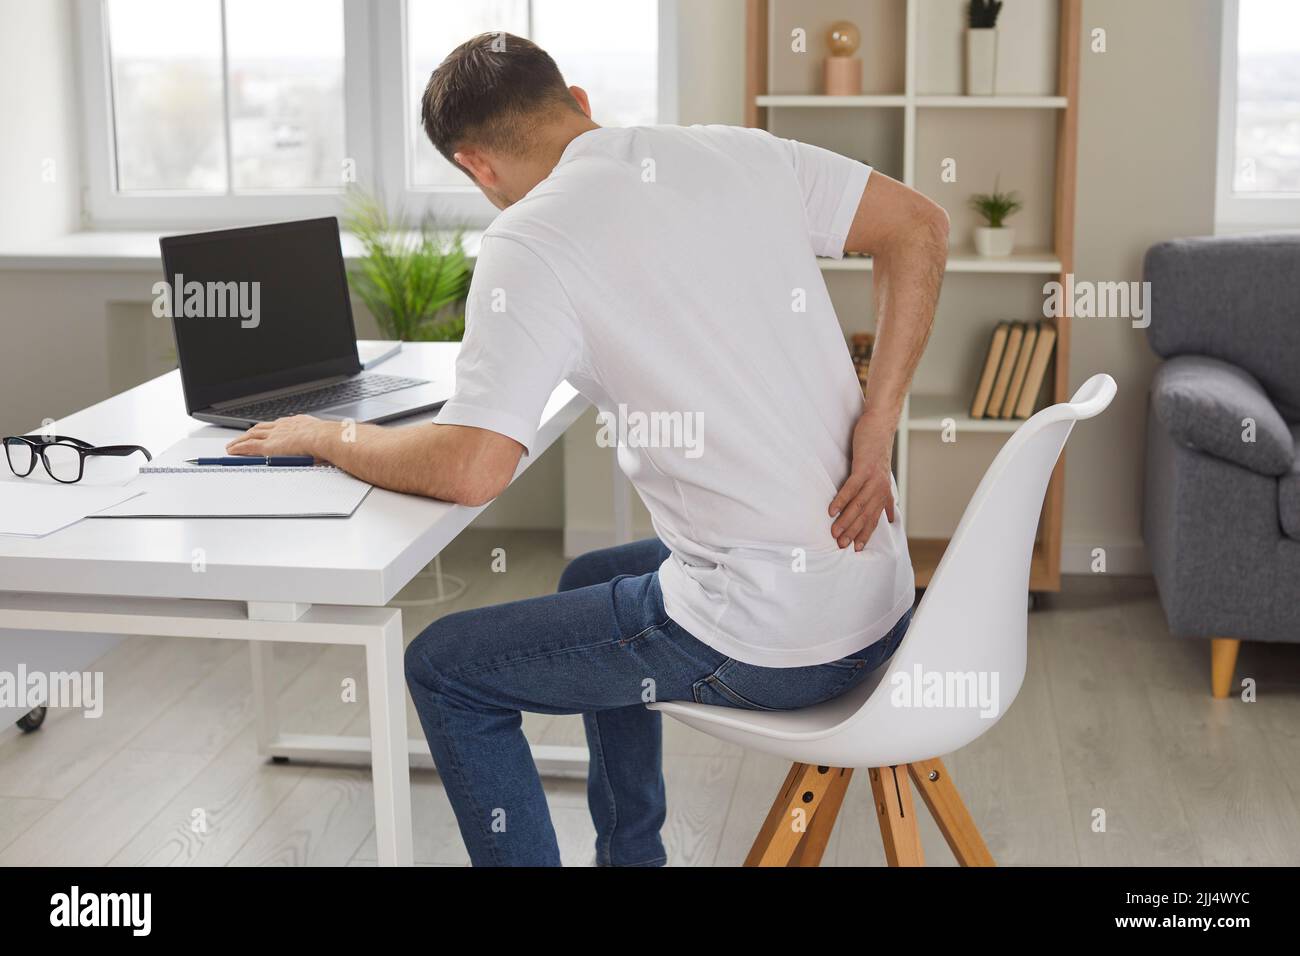 L'homme éprouve de graves douleurs au dos causées par une position assise prolongée et incorrecte sur le lieu de travail. Banque D'Images